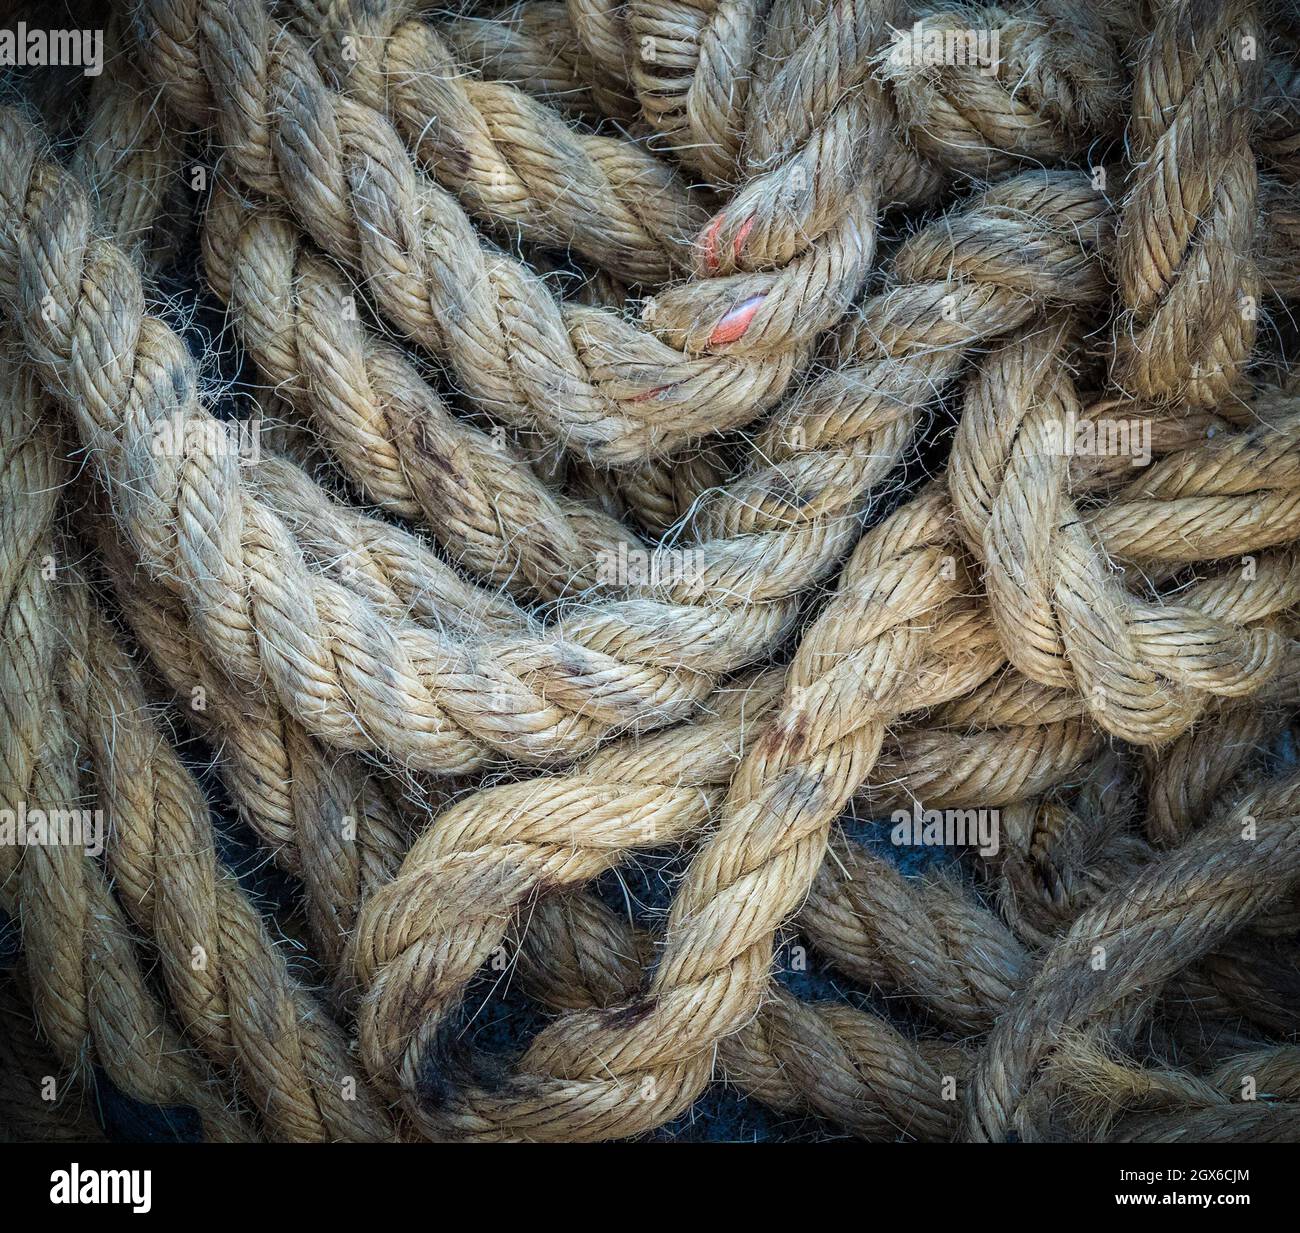 https://c8.alamy.com/comp/2GX6CJM/ship-rope-close-up-texture-nautical-background-2GX6CJM.jpg